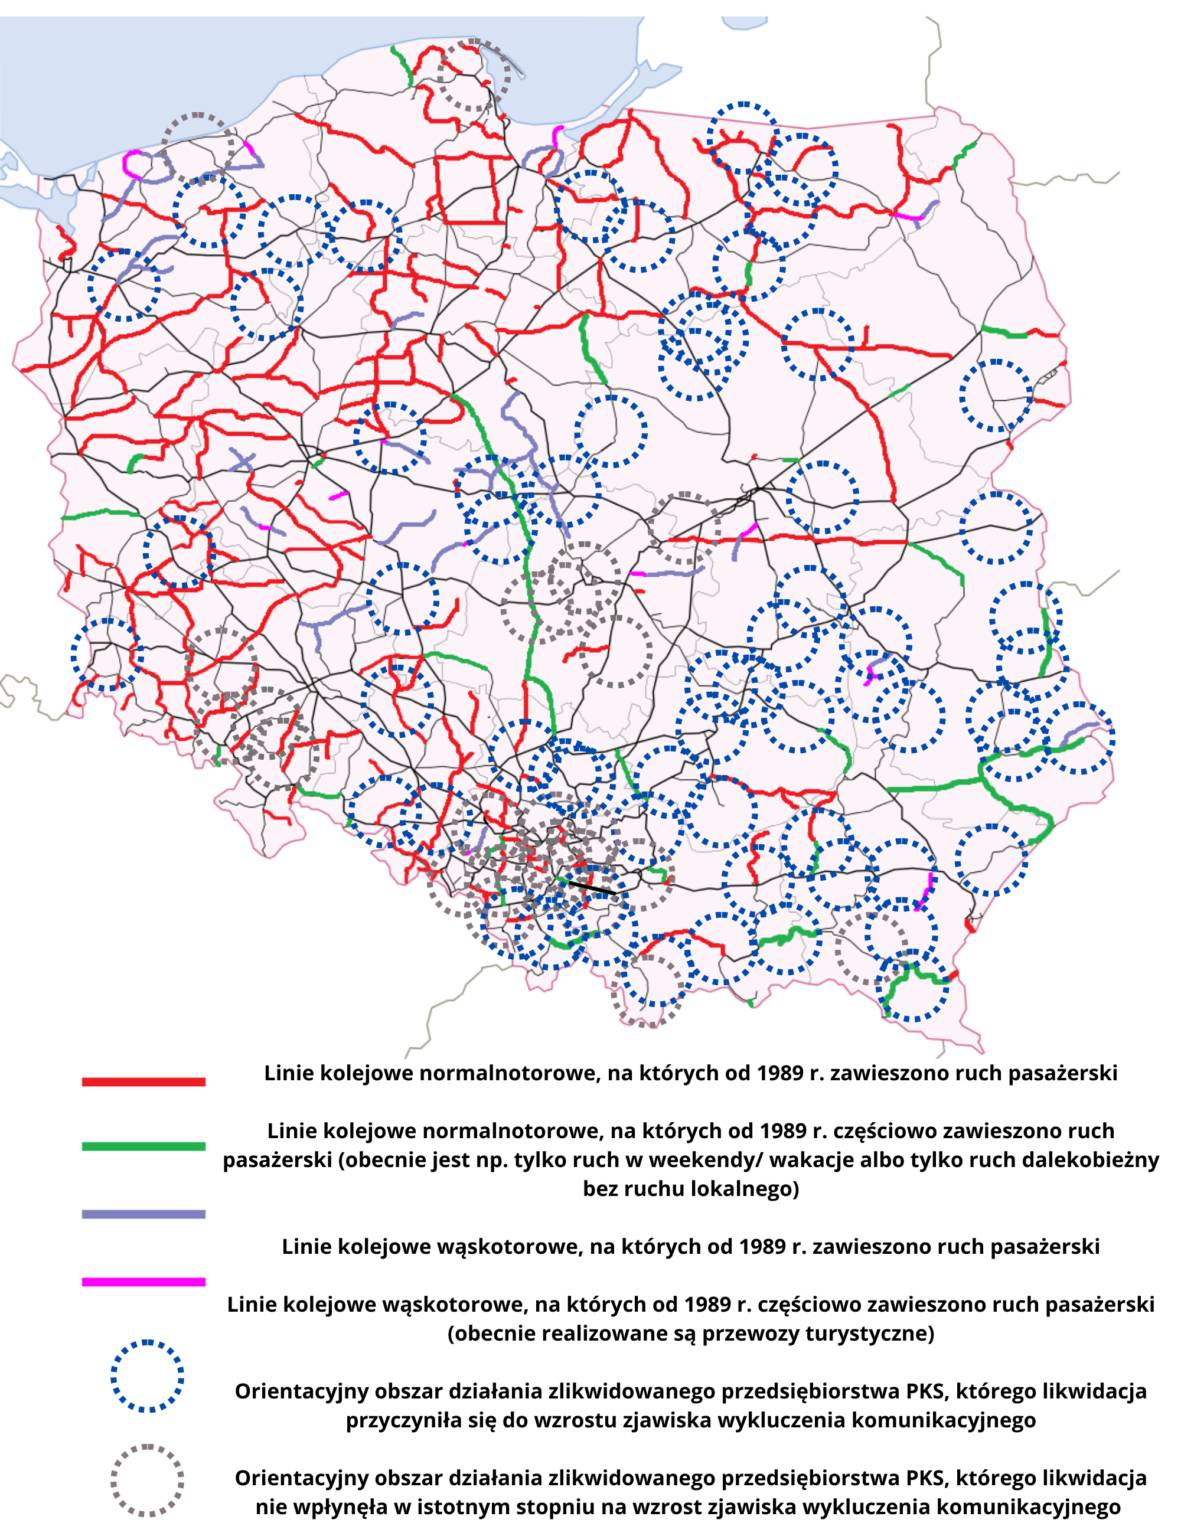 Mapa, na której widać, ile linii kolejowych zostało zlikwidowanych po 1989 roku. Duża część mapy zaznaczona kolorem czerwonym, oznaczającym likwidację linii